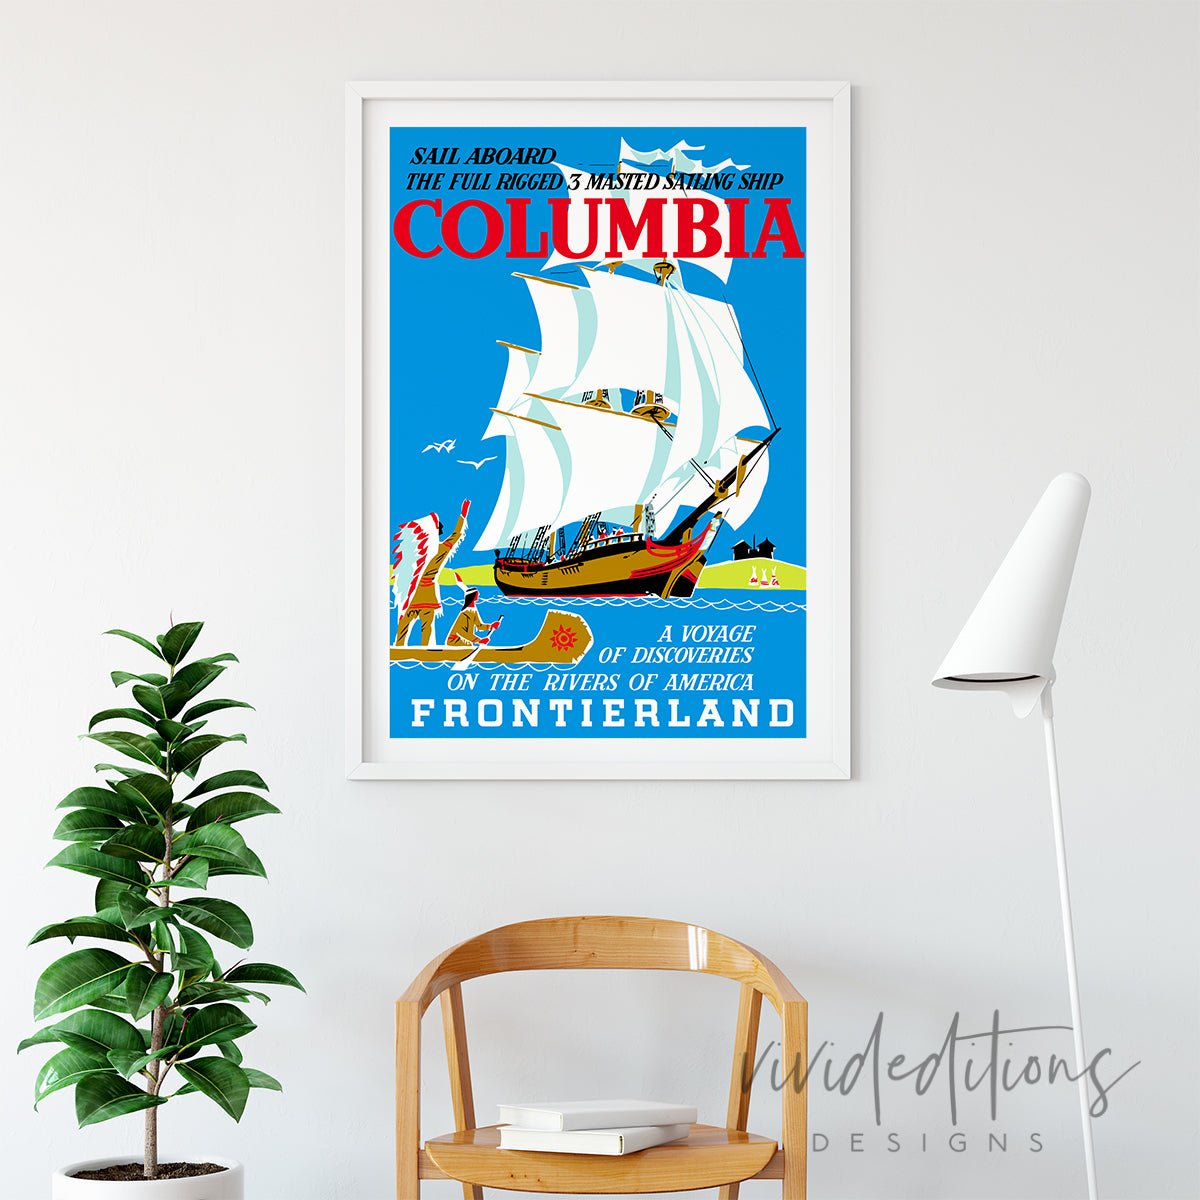 Columbia Sailing Ship, Disneyland Poster Print - VividEditions